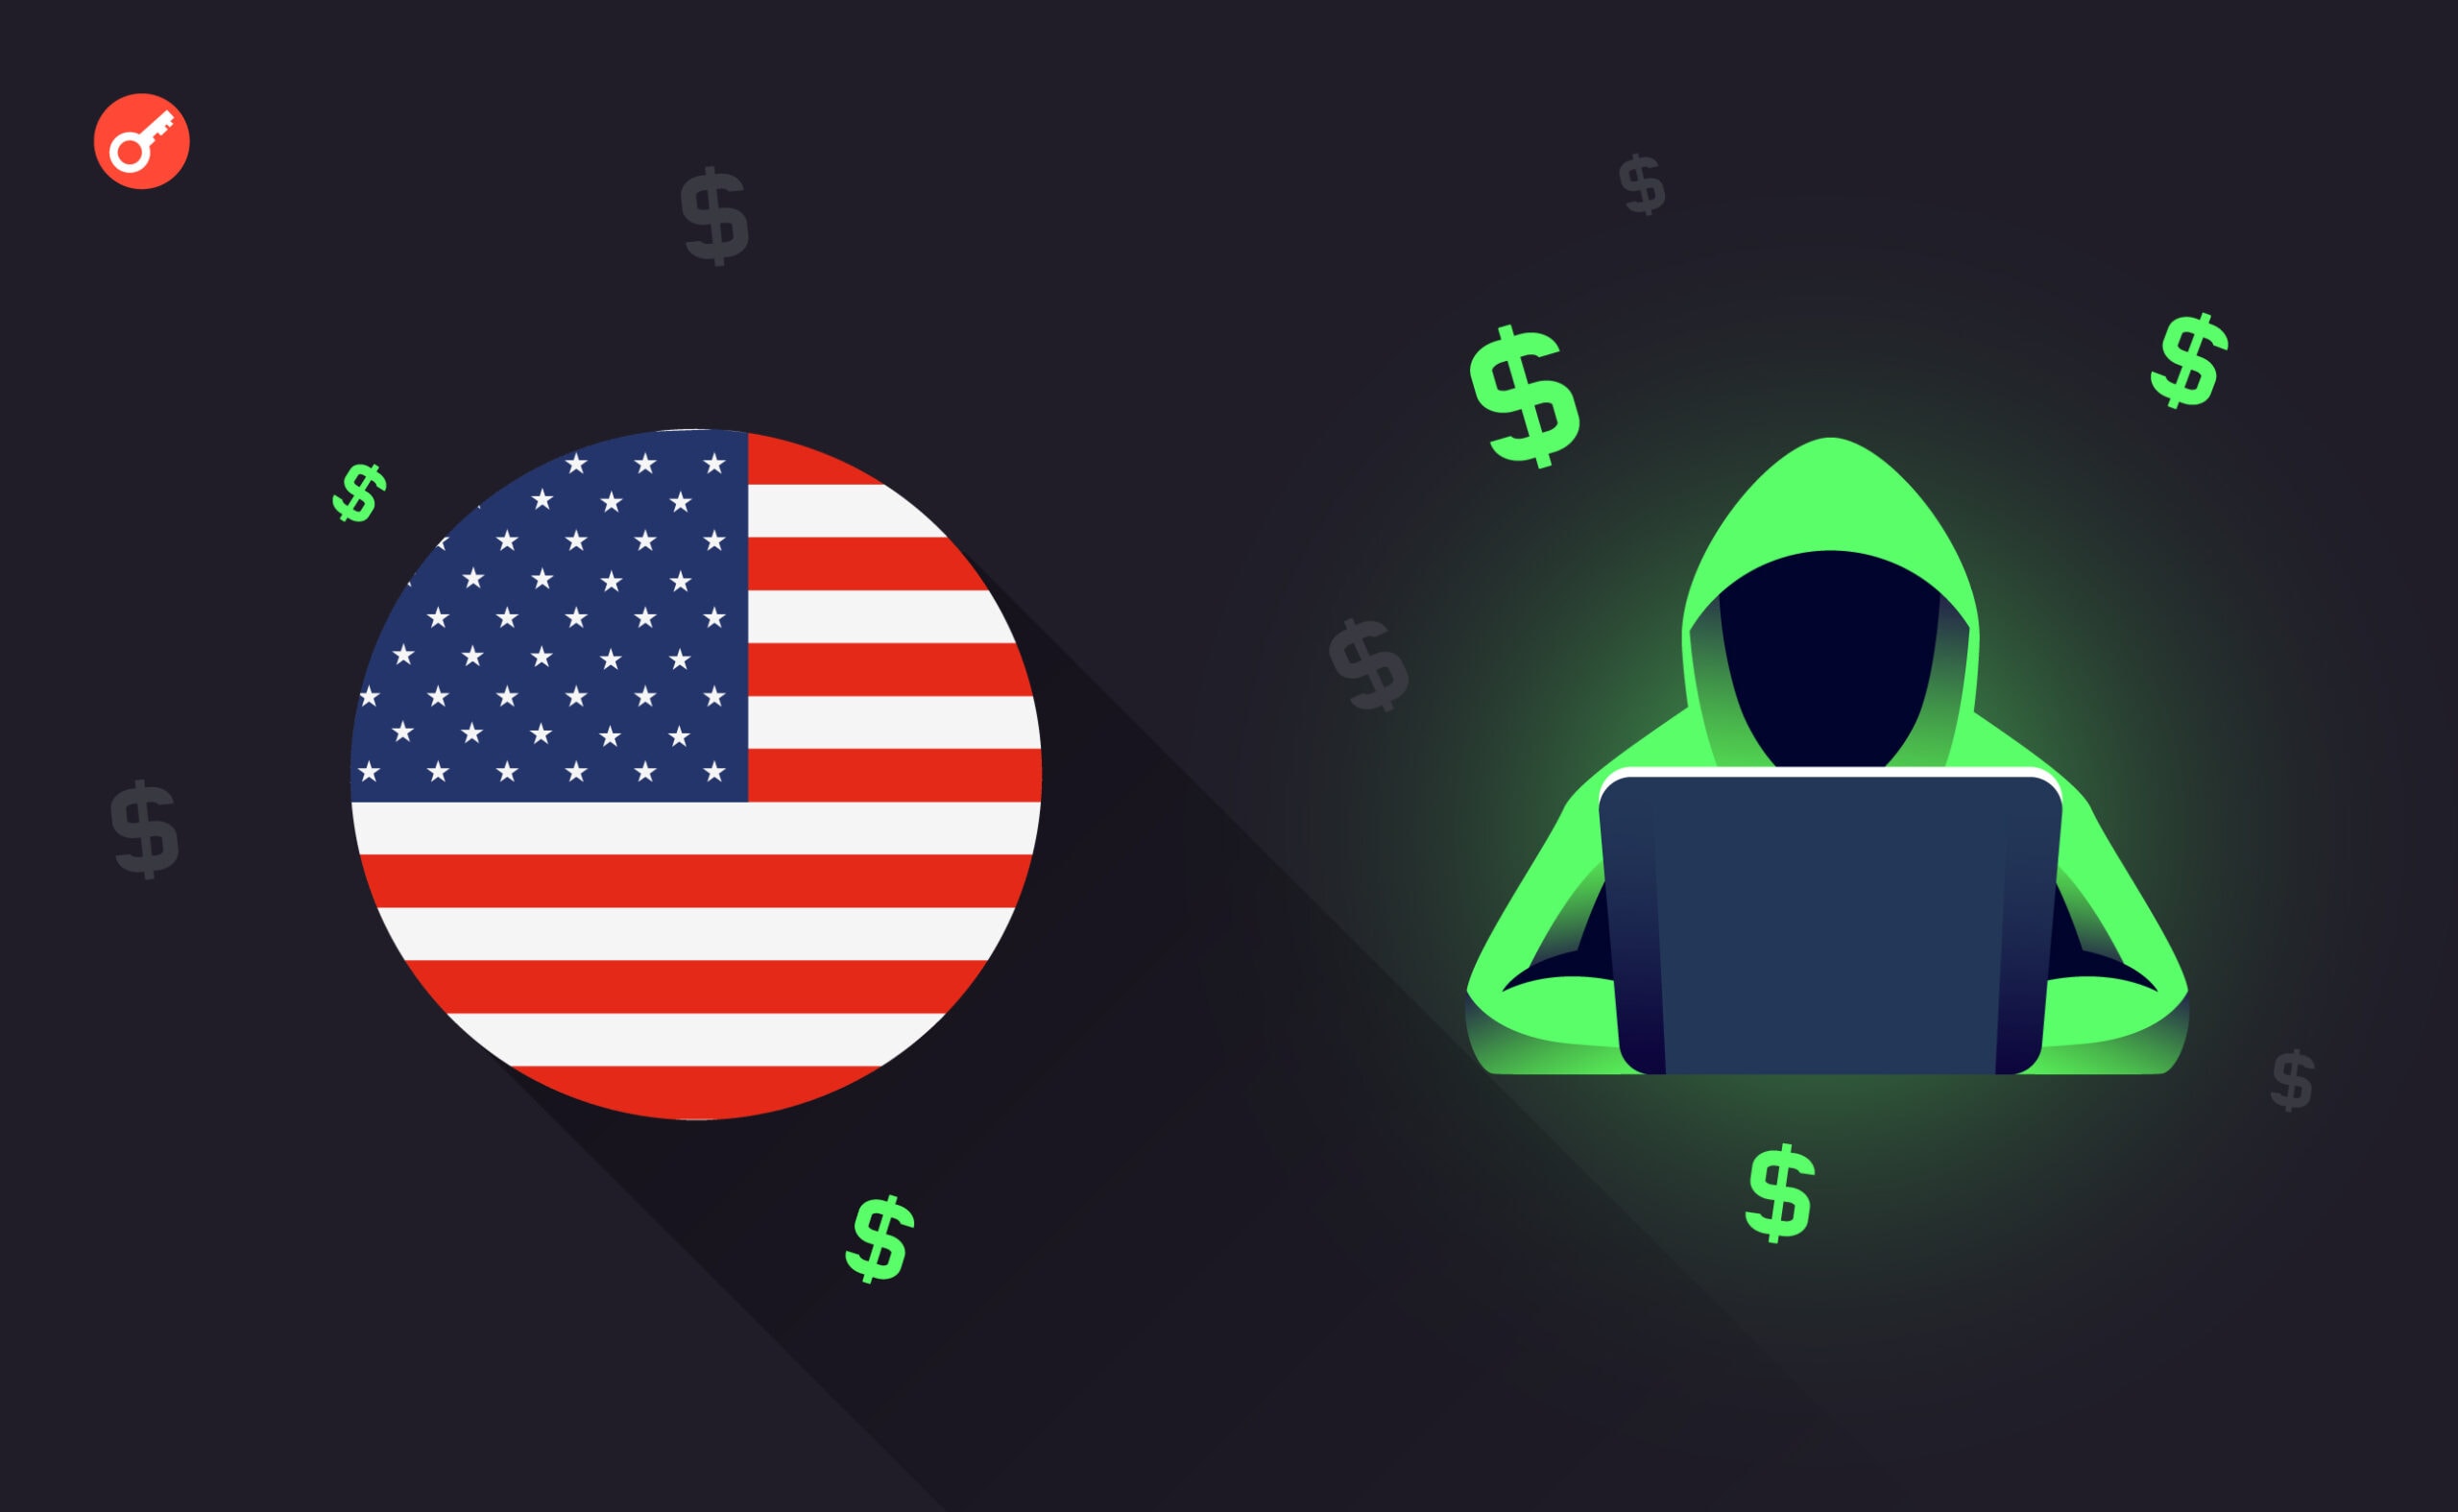 США отправит кибератташе в 4 страны для борьбы с криптопреступлениями. Заглавный коллаж новости.